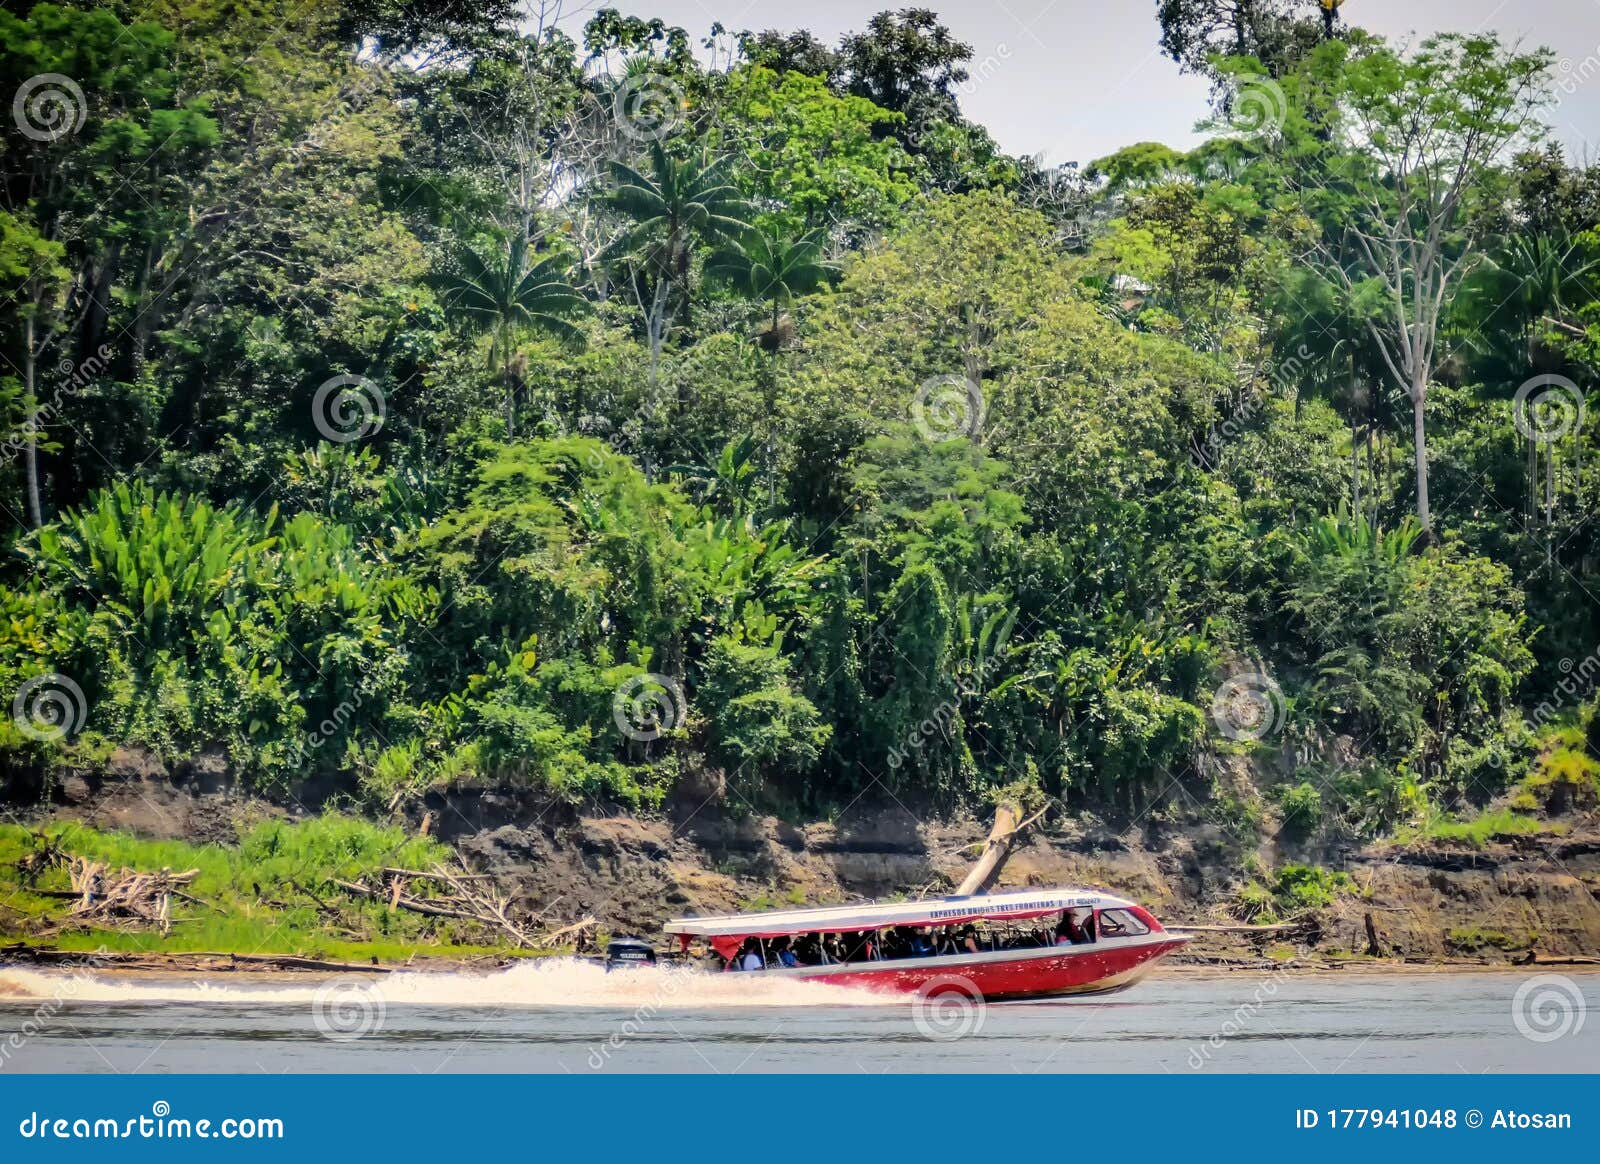 boat bus in leticia, amazonas river, colombia, america